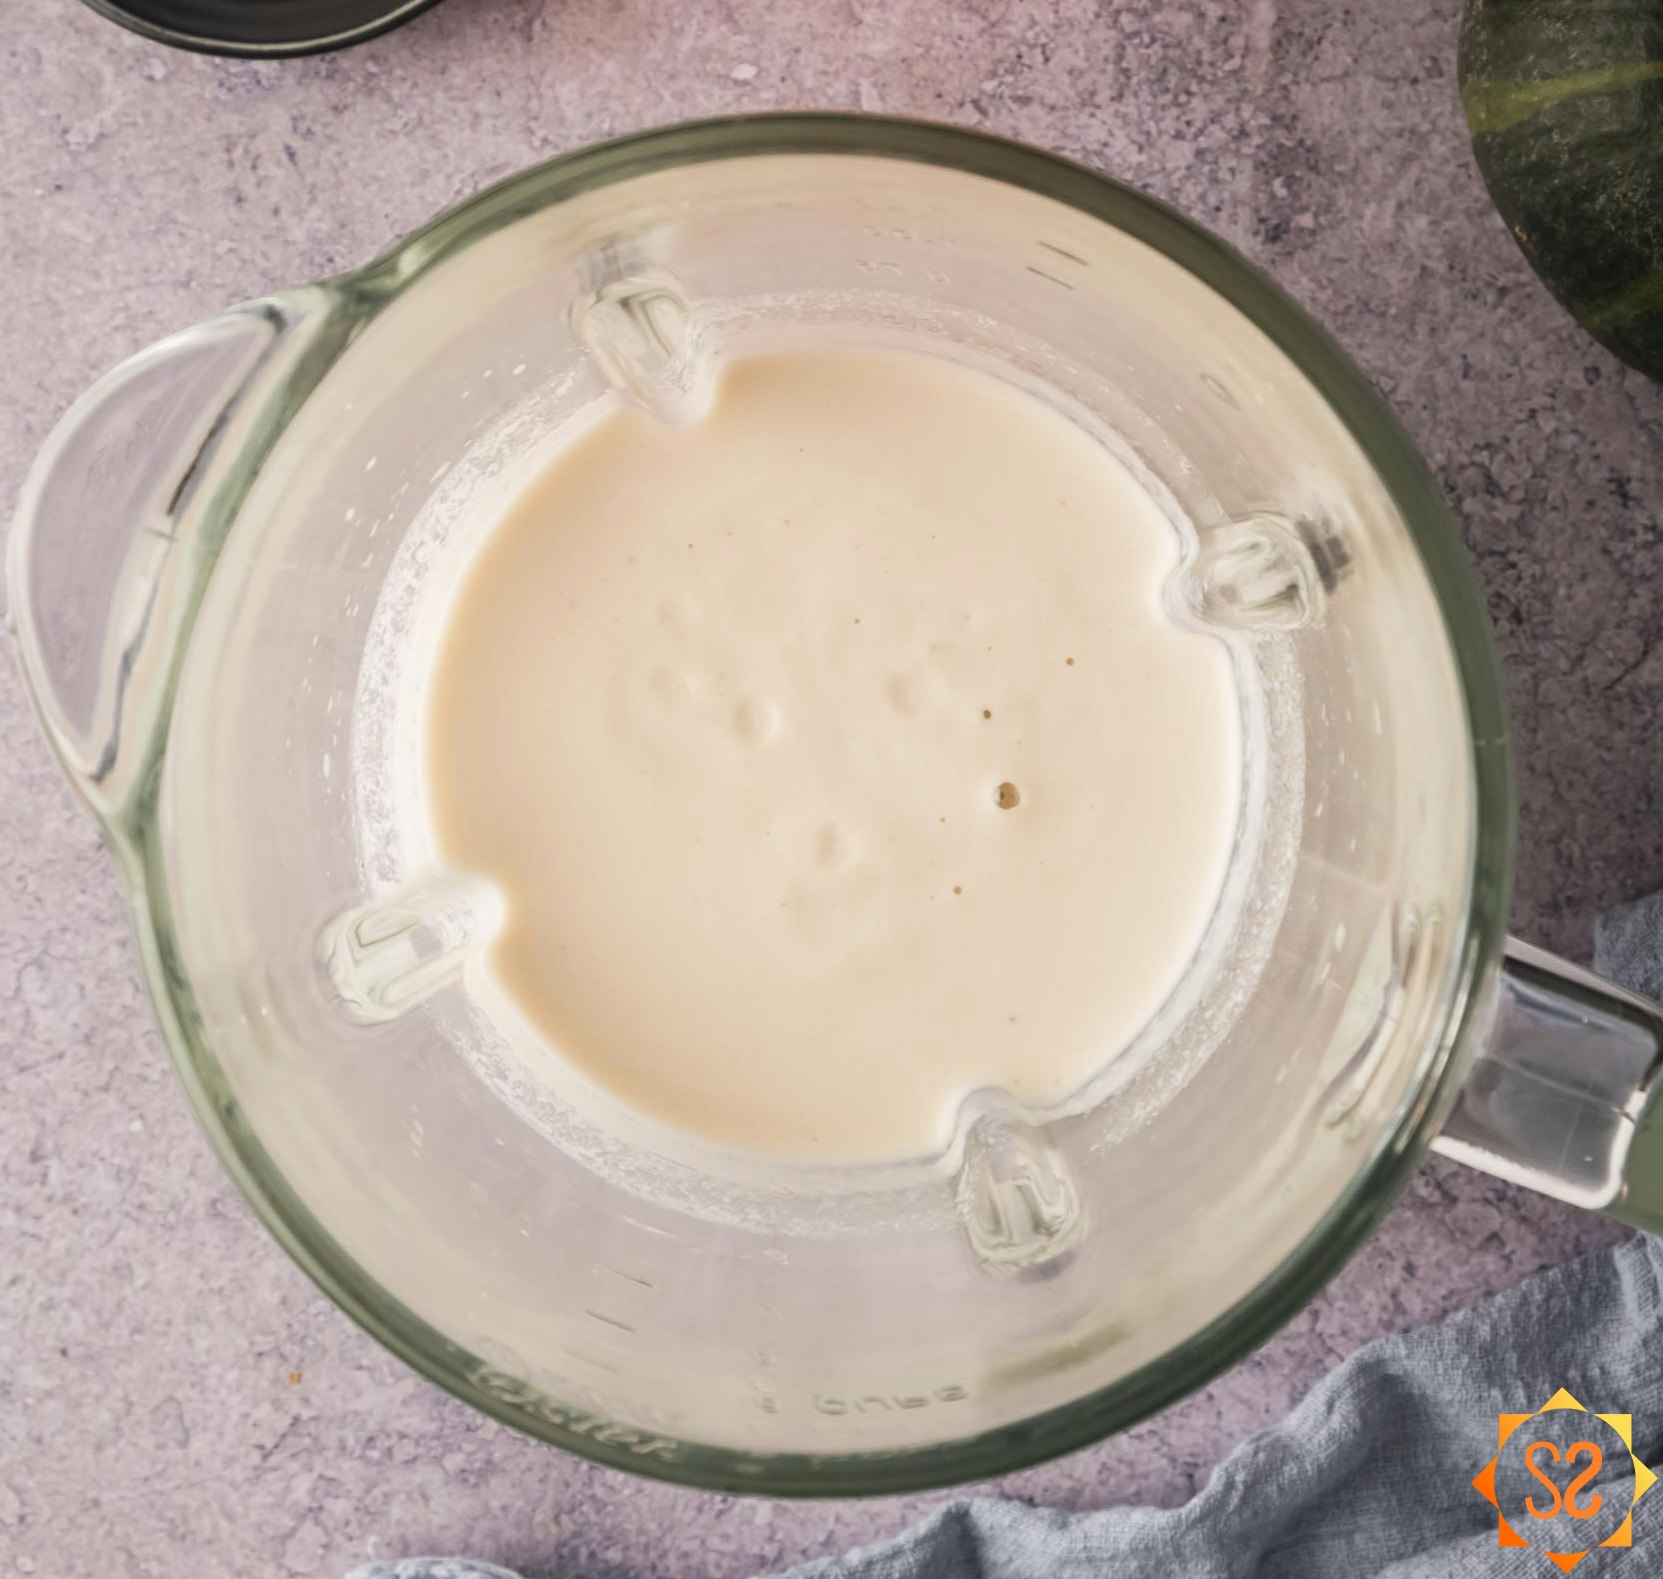 Blended cashew cream in a blender.